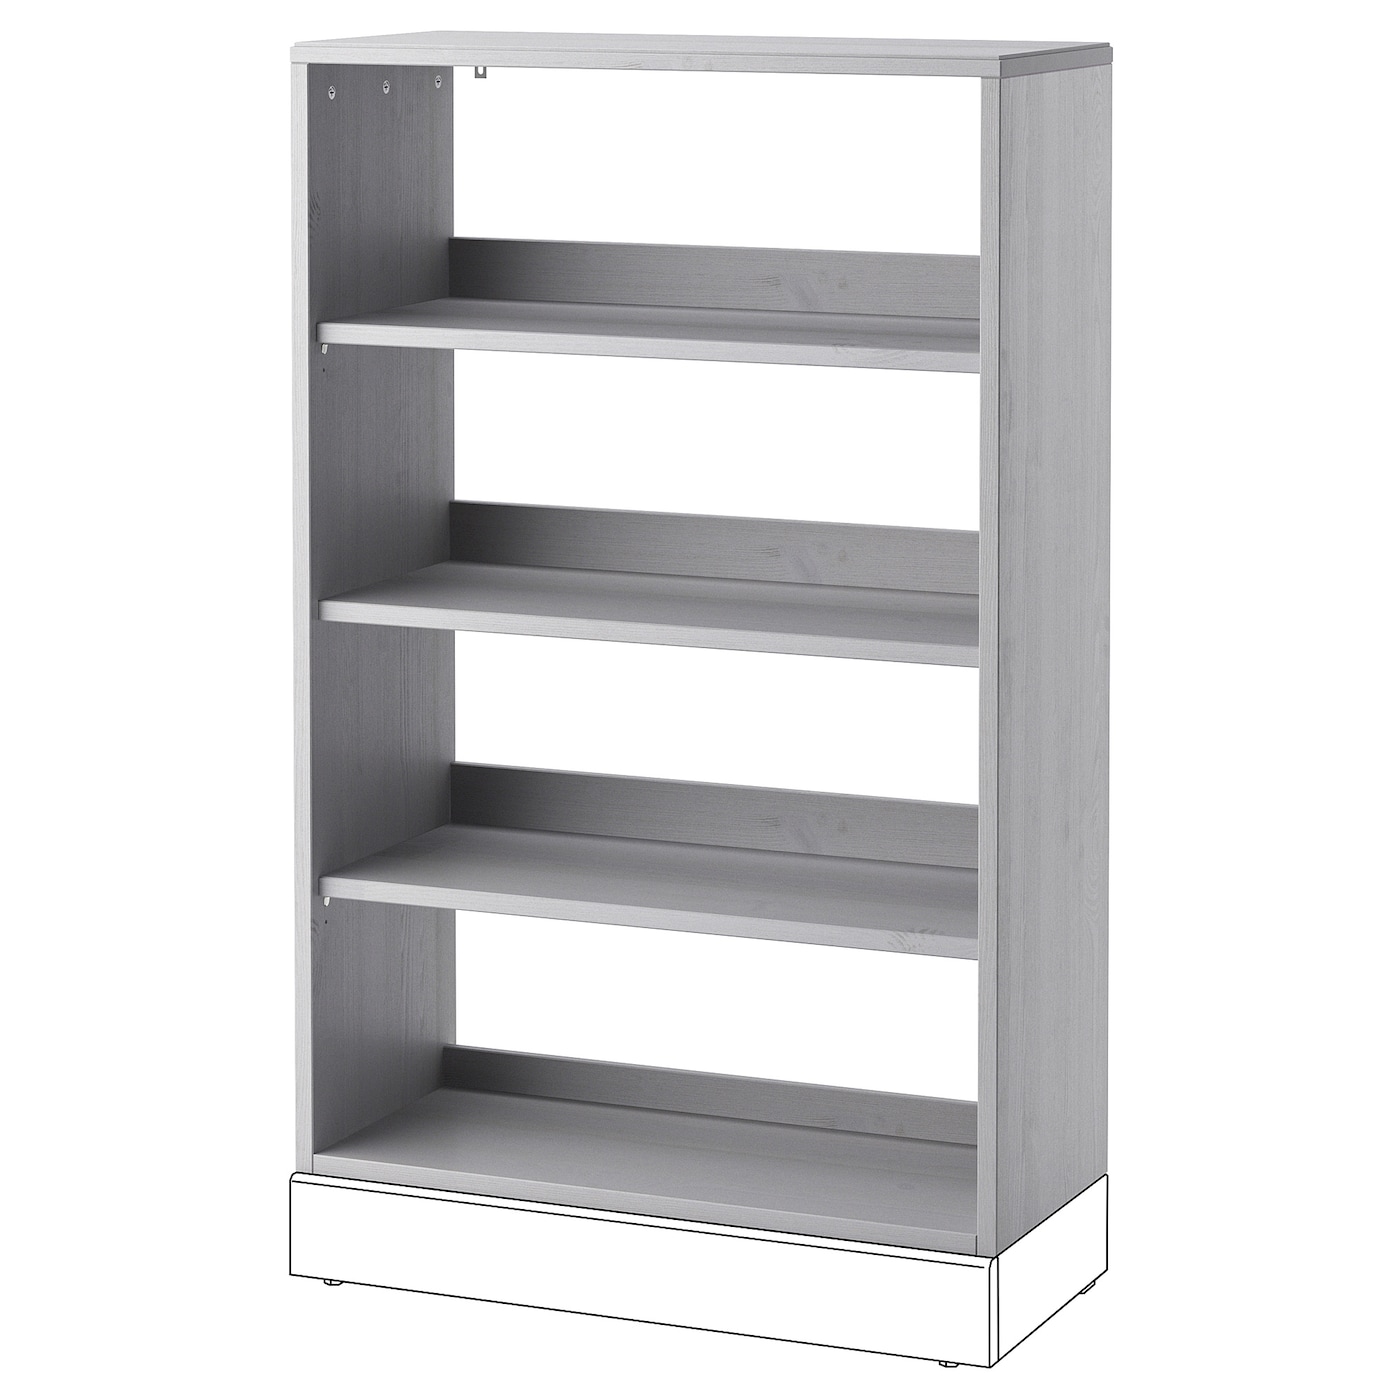 Книжный шкаф - HAVSTA IKEA/ ХАВСТА ИКЕА,  123х81 см, серый